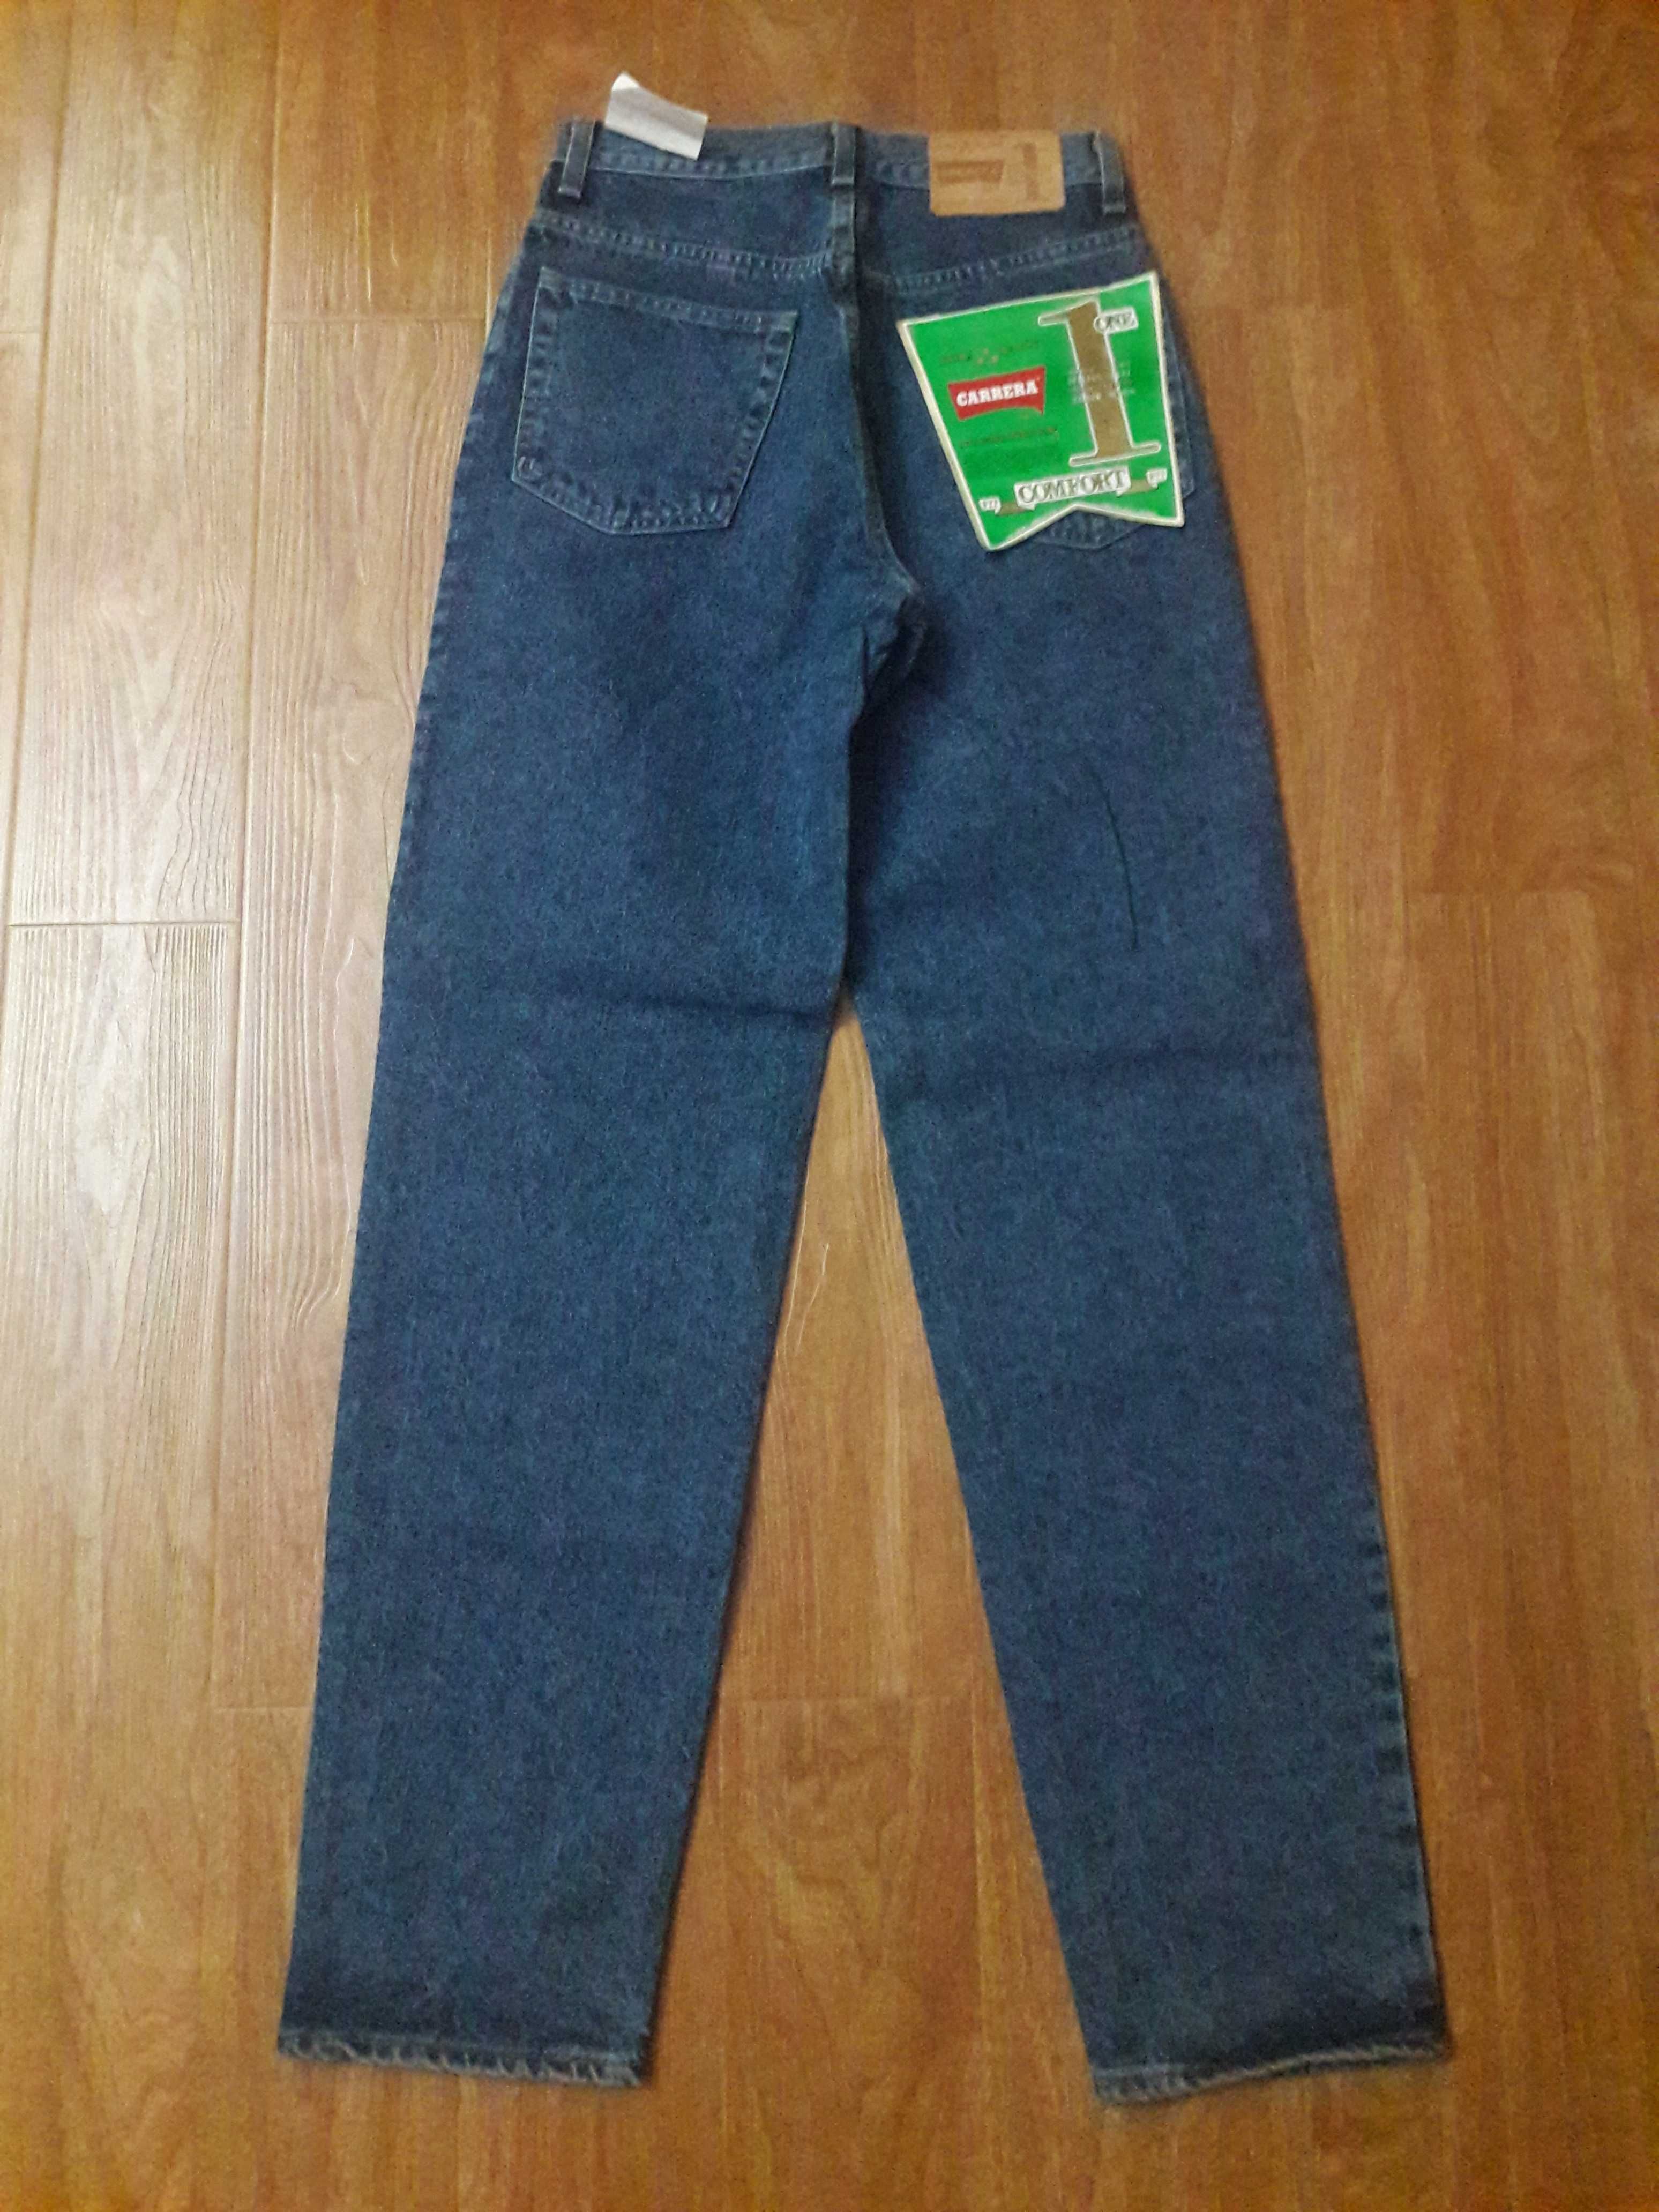 Новые джинсы CARRERA из США. Размер 28-29